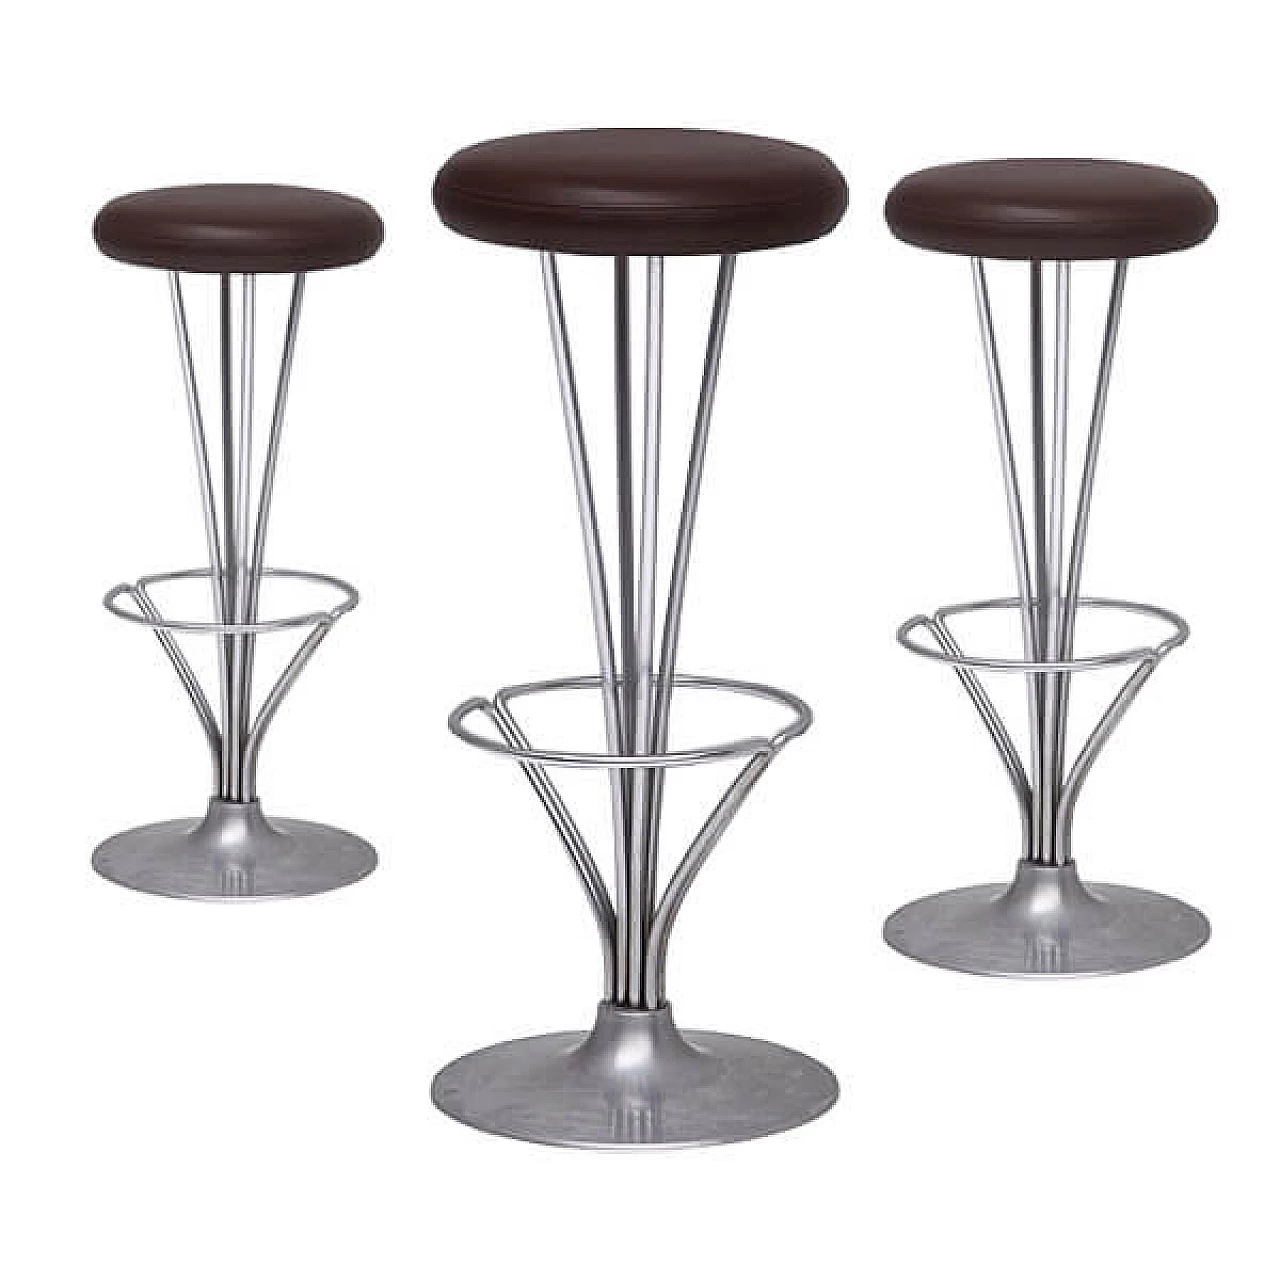 3-stool set designed by Piet Hein for Fritz Hansen 1067680